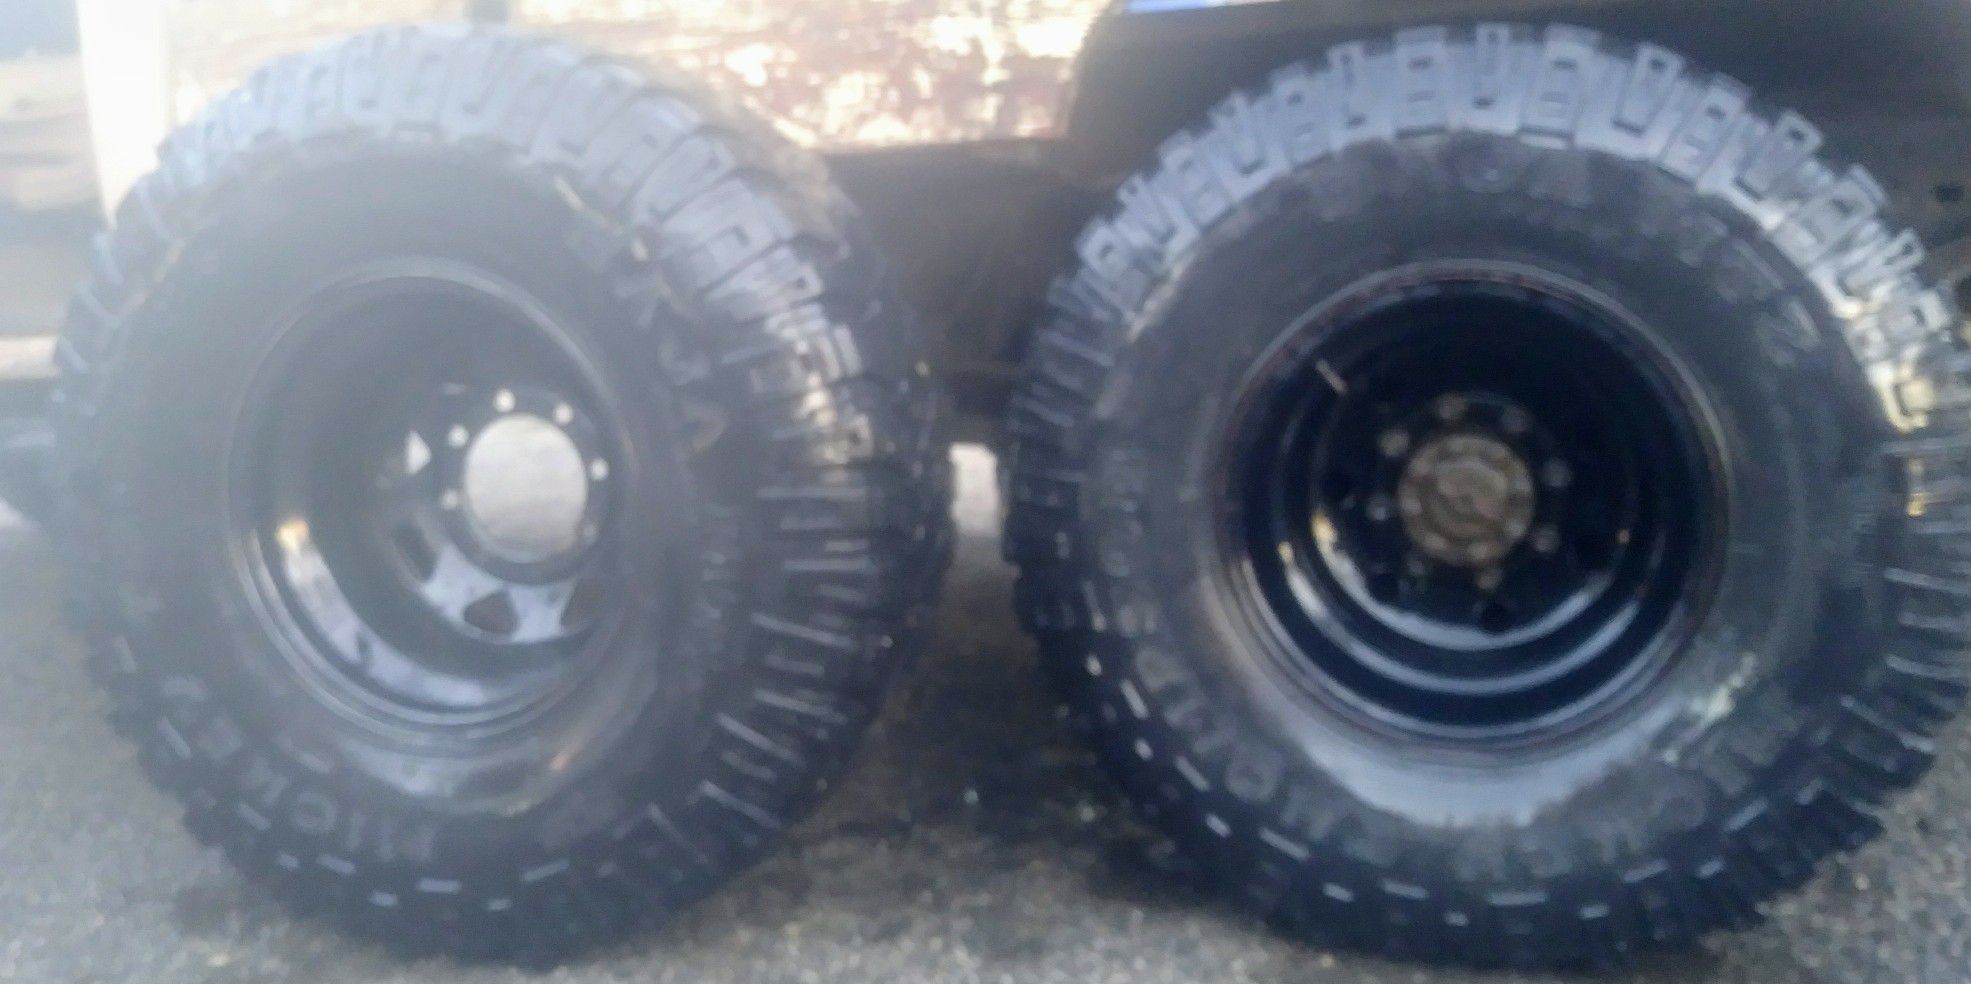 8 lug ford 15" Black legand Rims on Mickey Thompson BAJA MTZ tires. 75-80% tread.